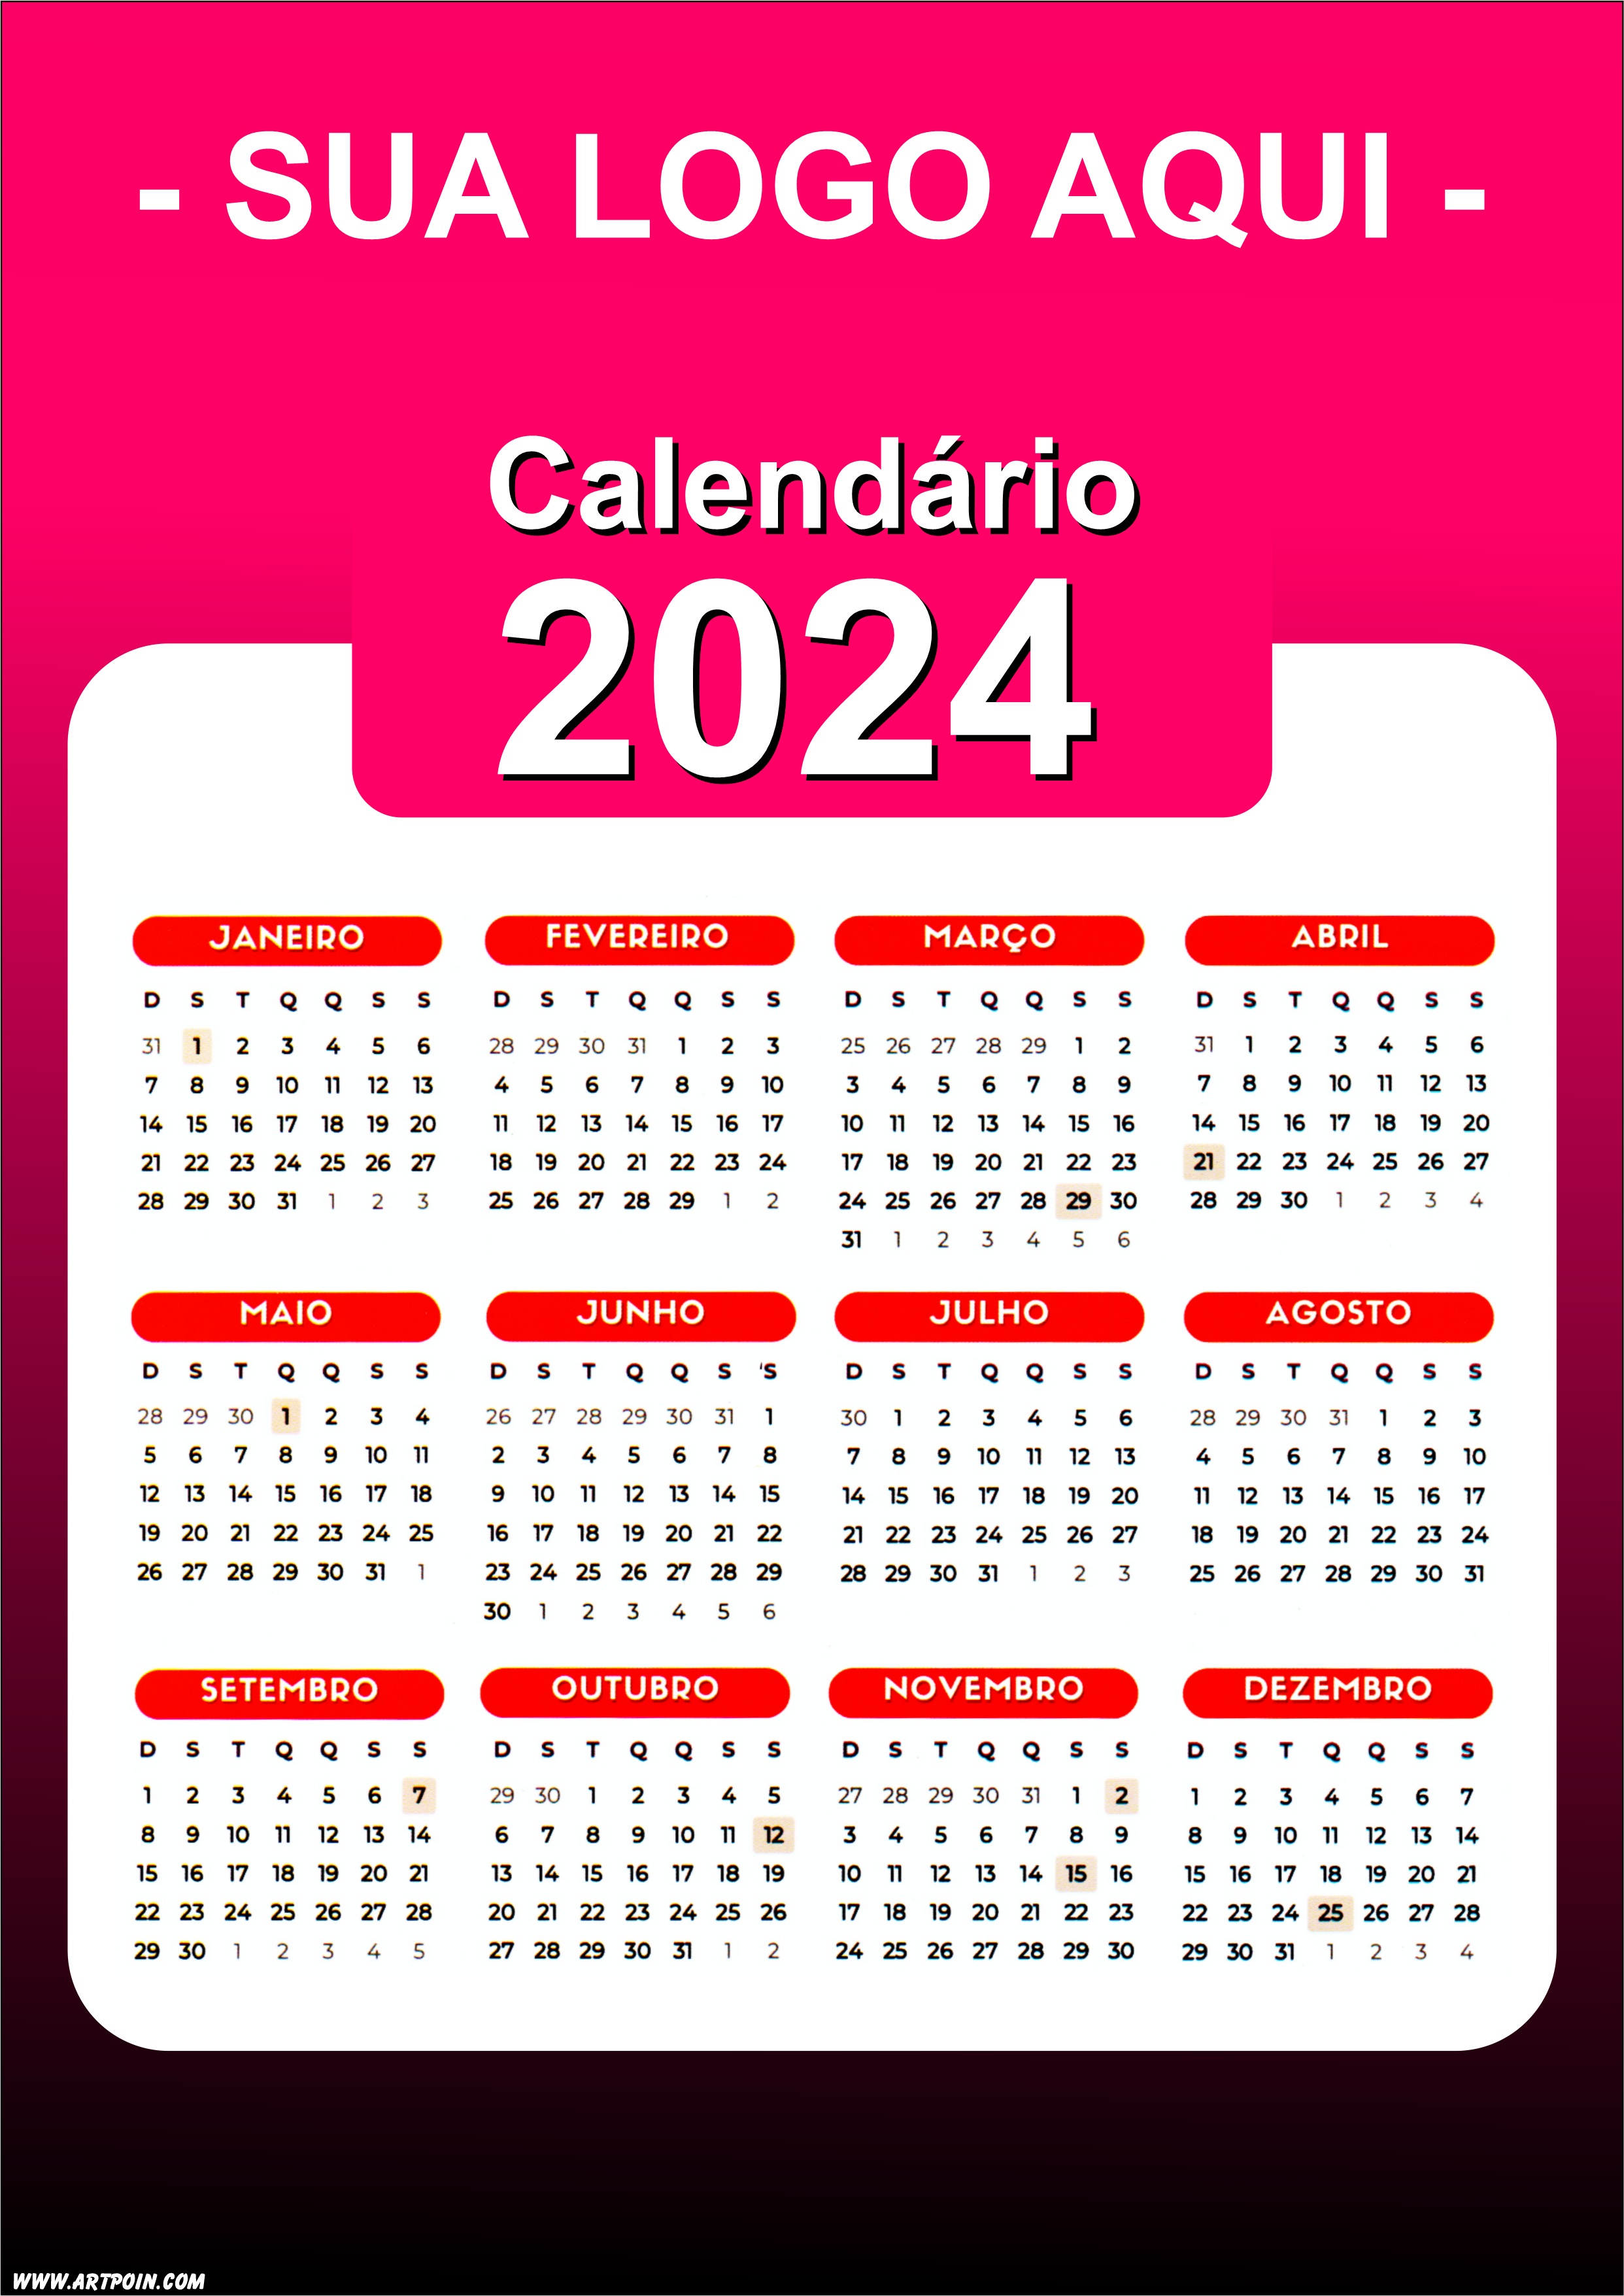 Calendário 2024 modelo rosa escuro para personalização com a logo da sua loja png